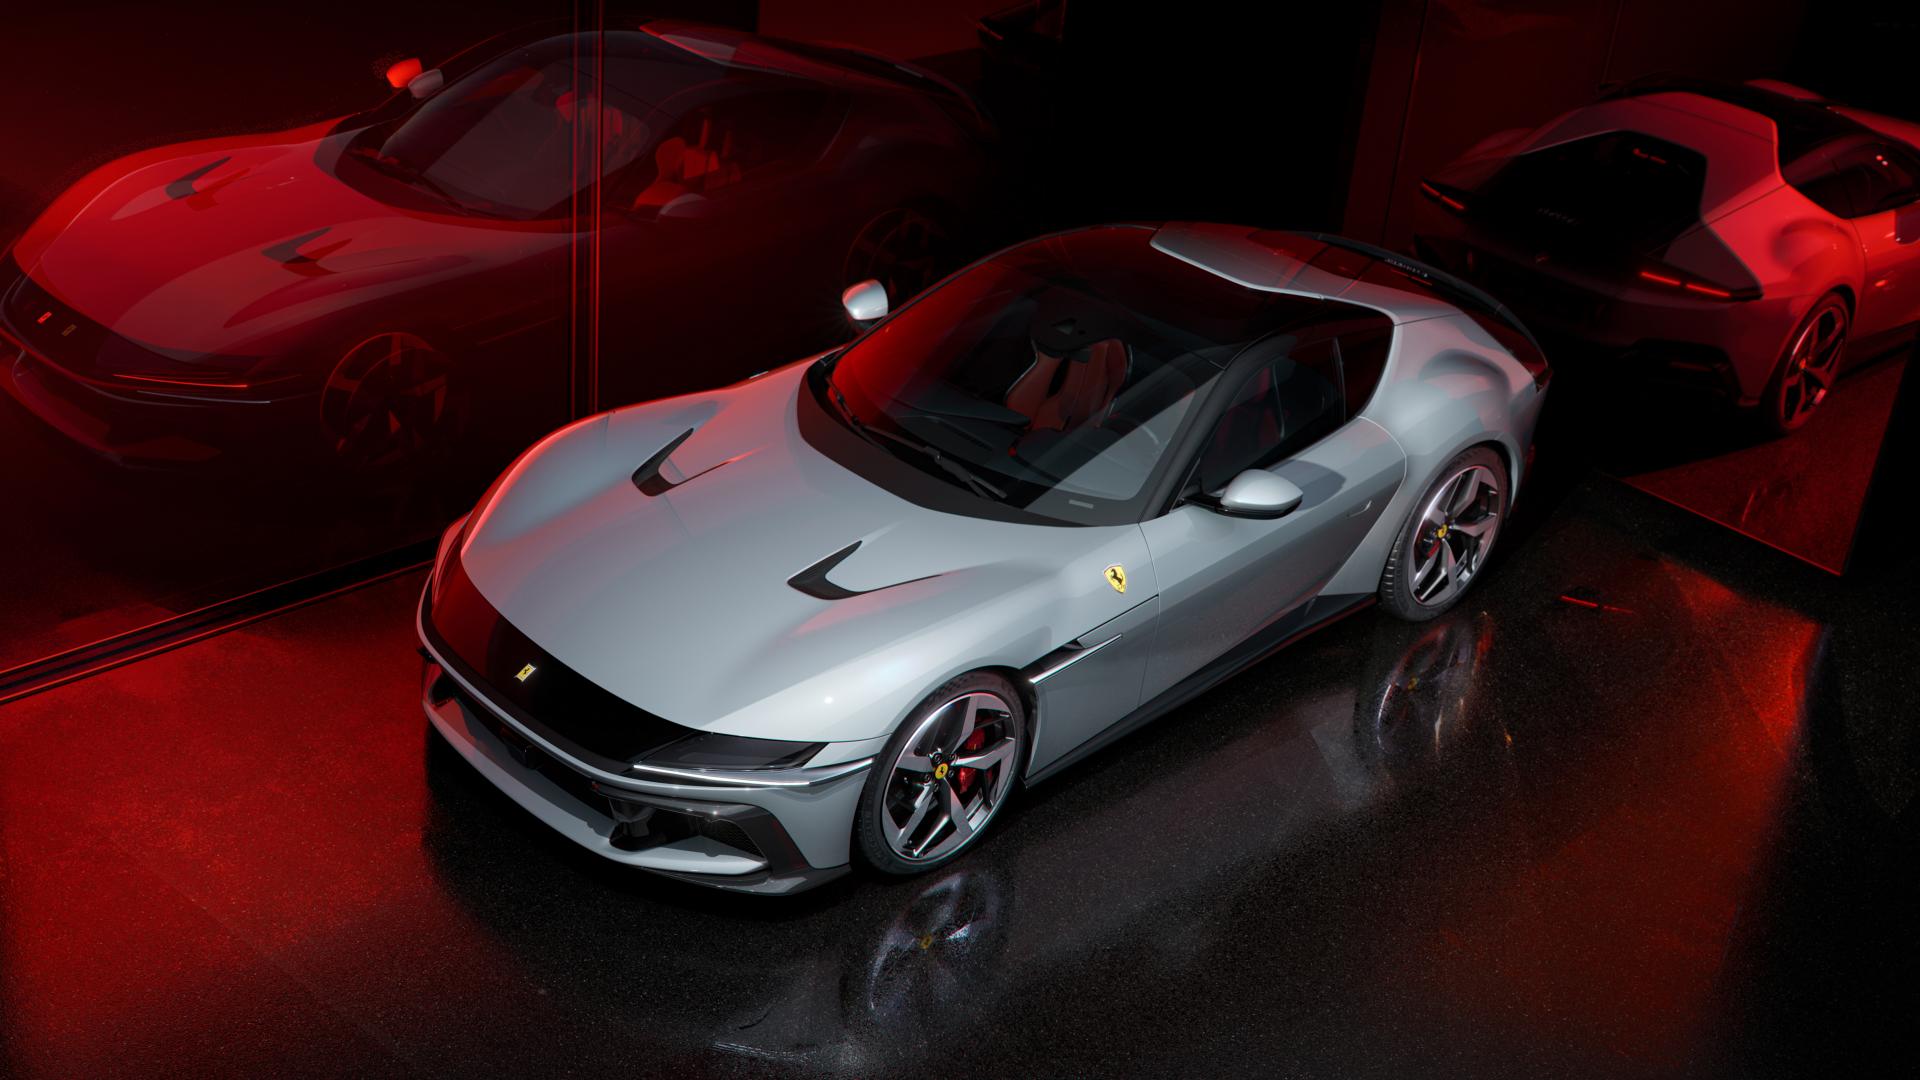 Ferrari odhalilo dvojicu šialených modelov. Pod kapotou majú „zakázané“ motory